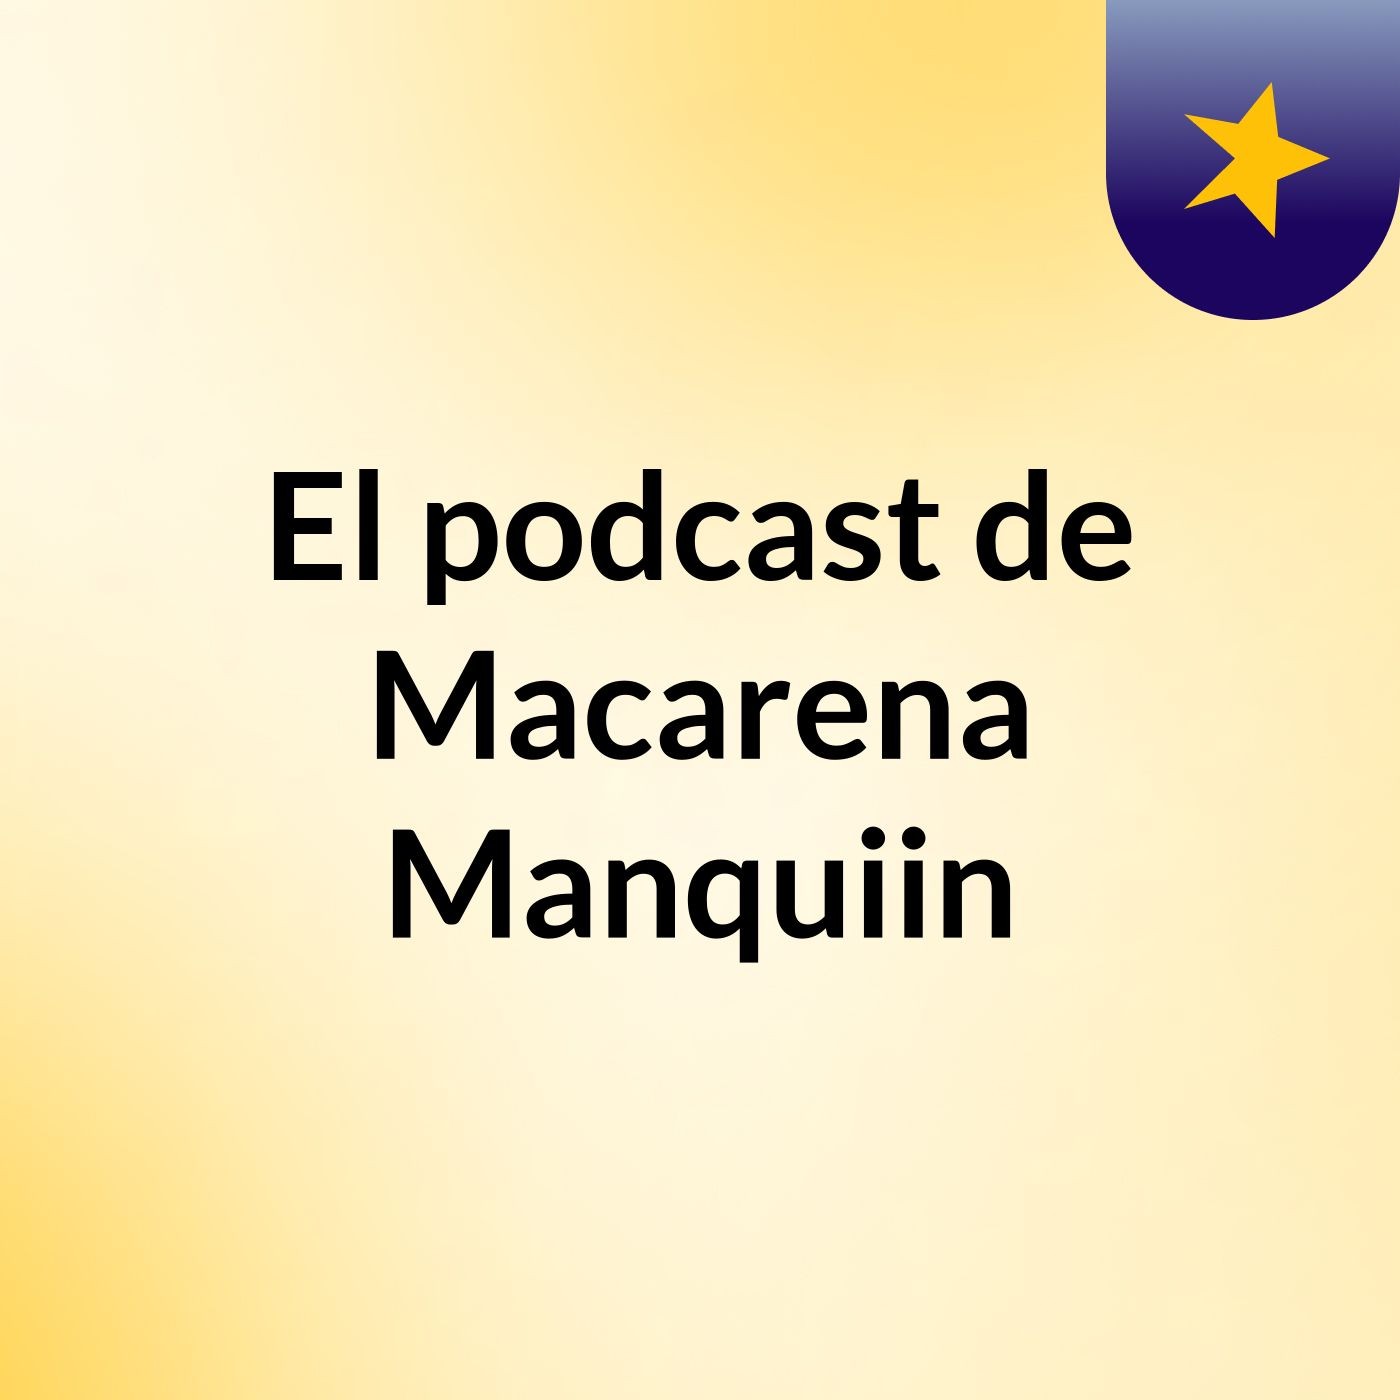 El podcast de Macarena Manquiin